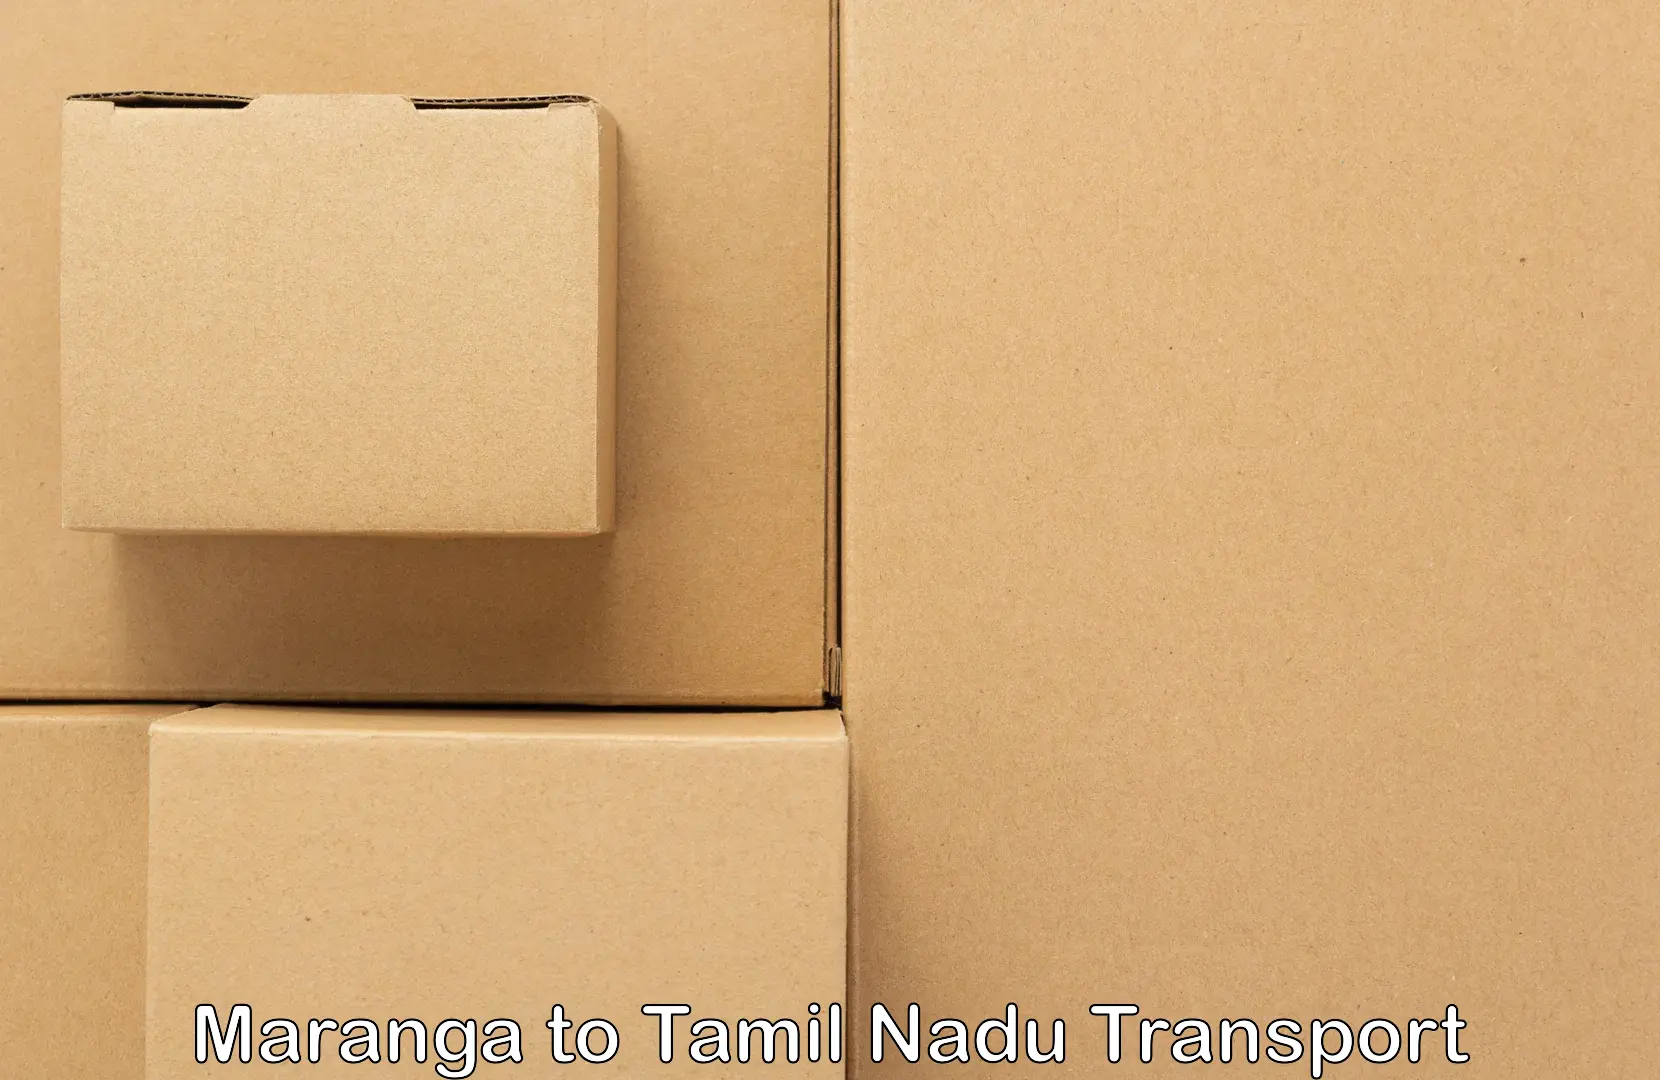 Transport services Maranga to Thiruvadanai